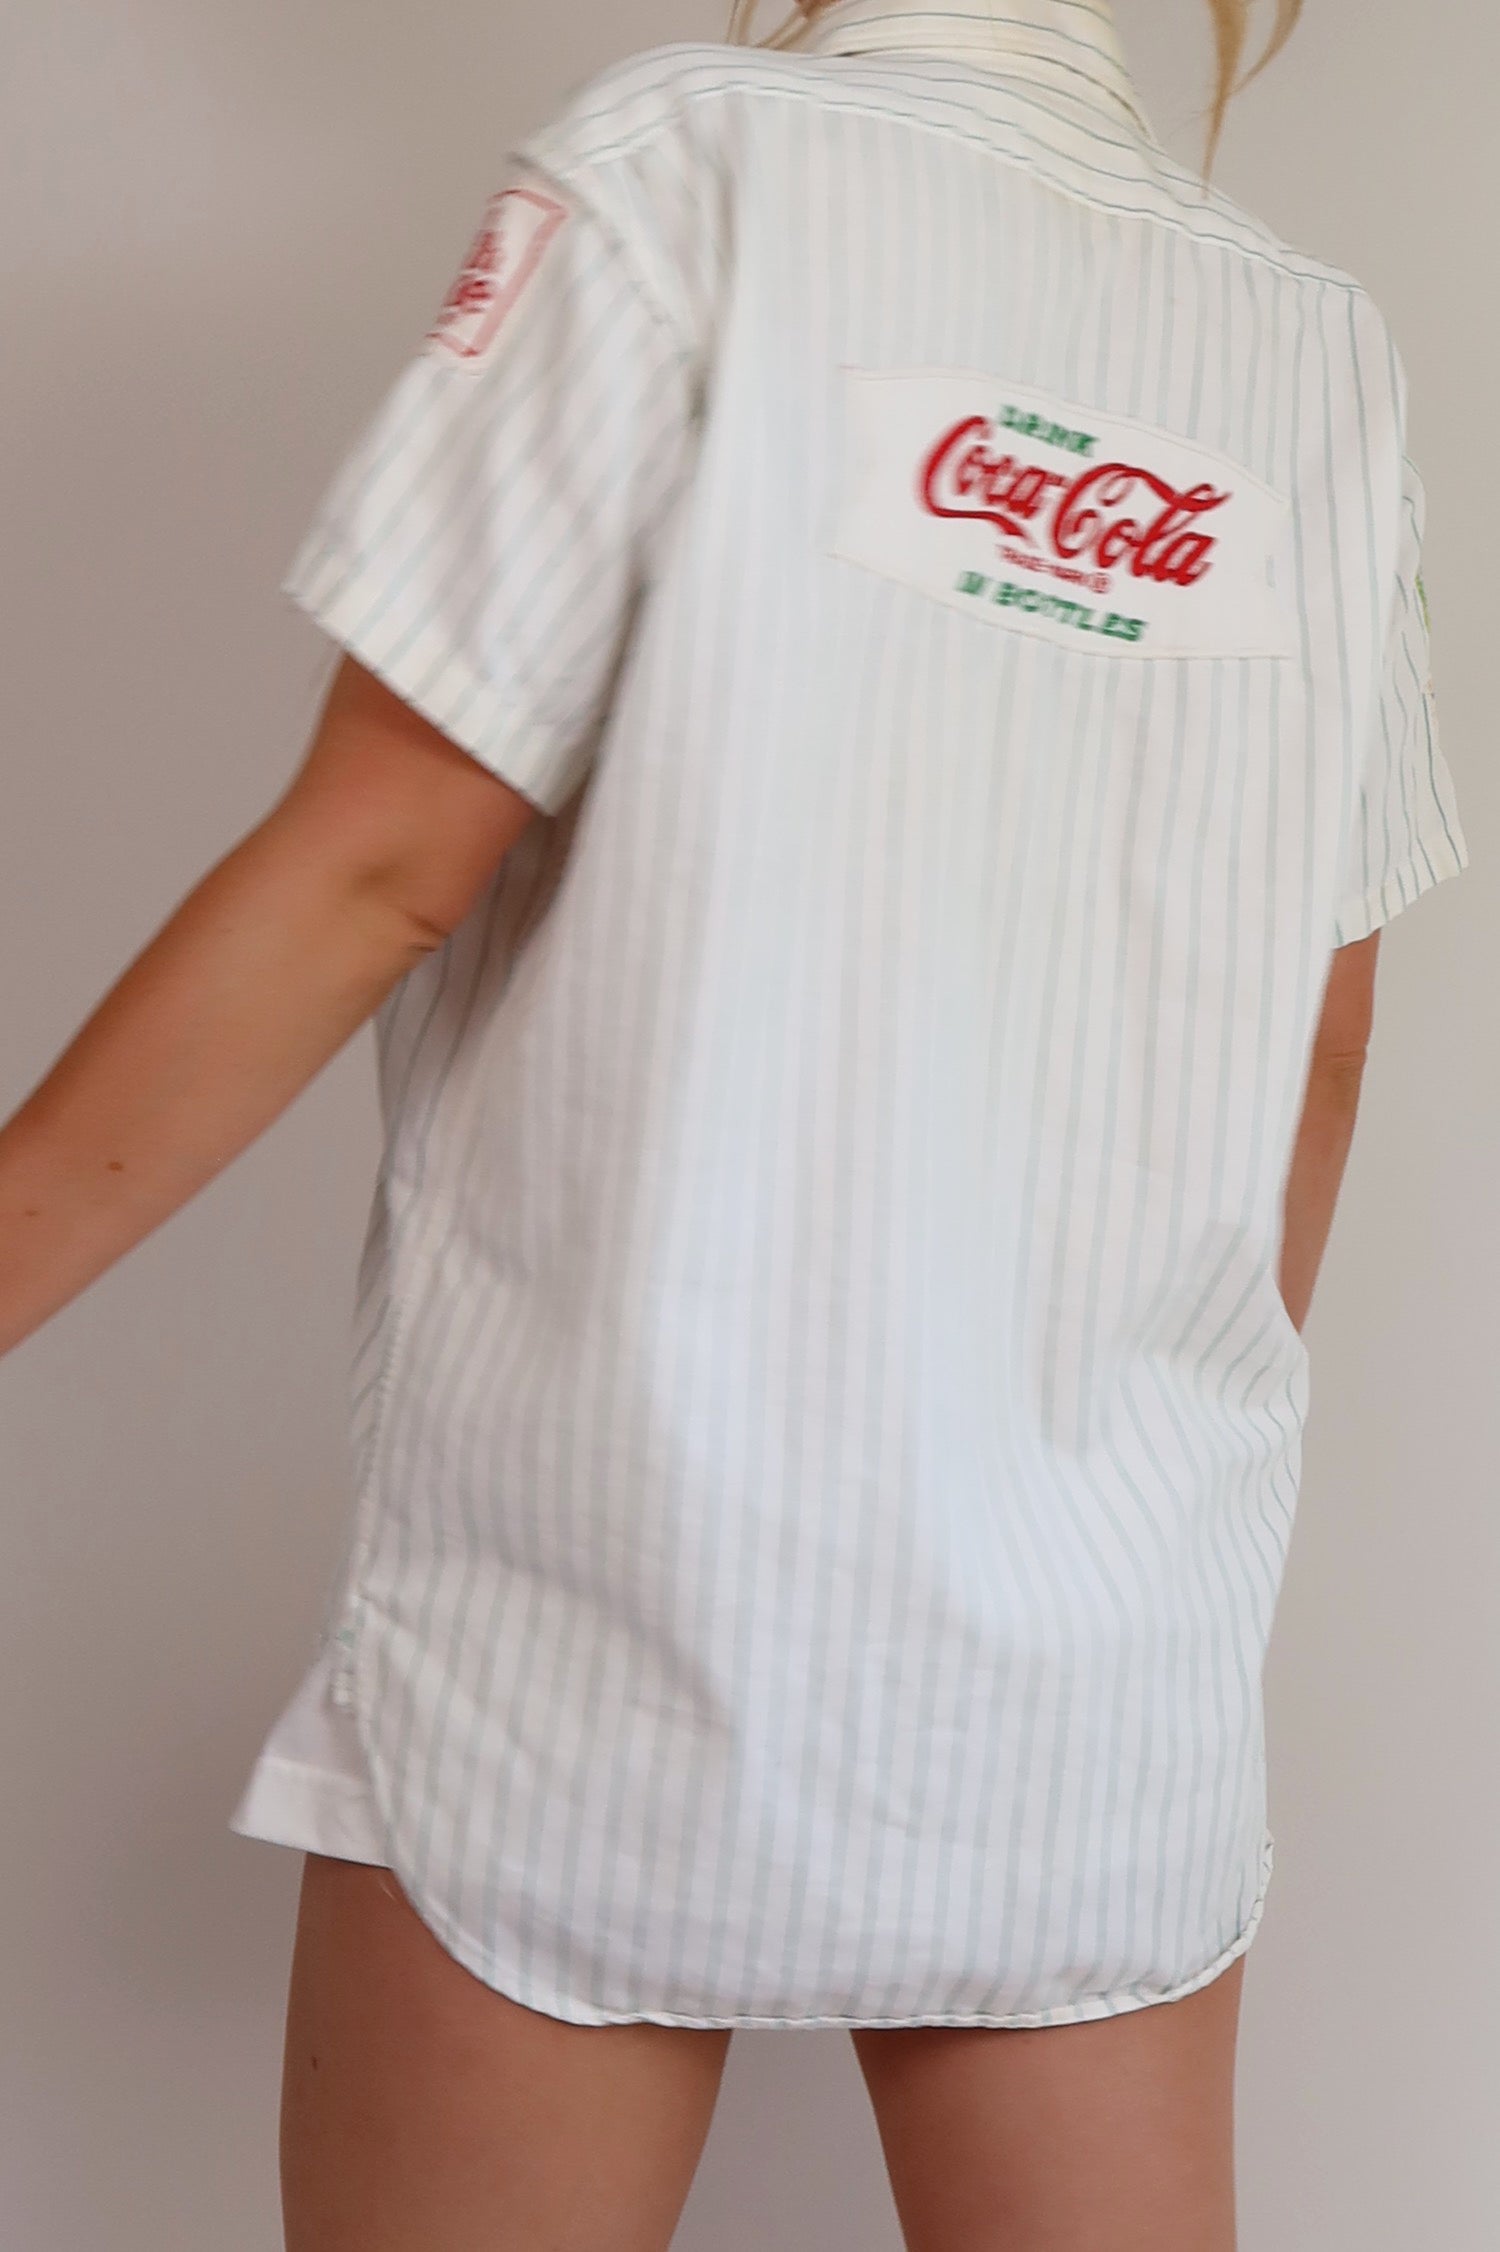 Coolest 60’s Coca Cola Button Up